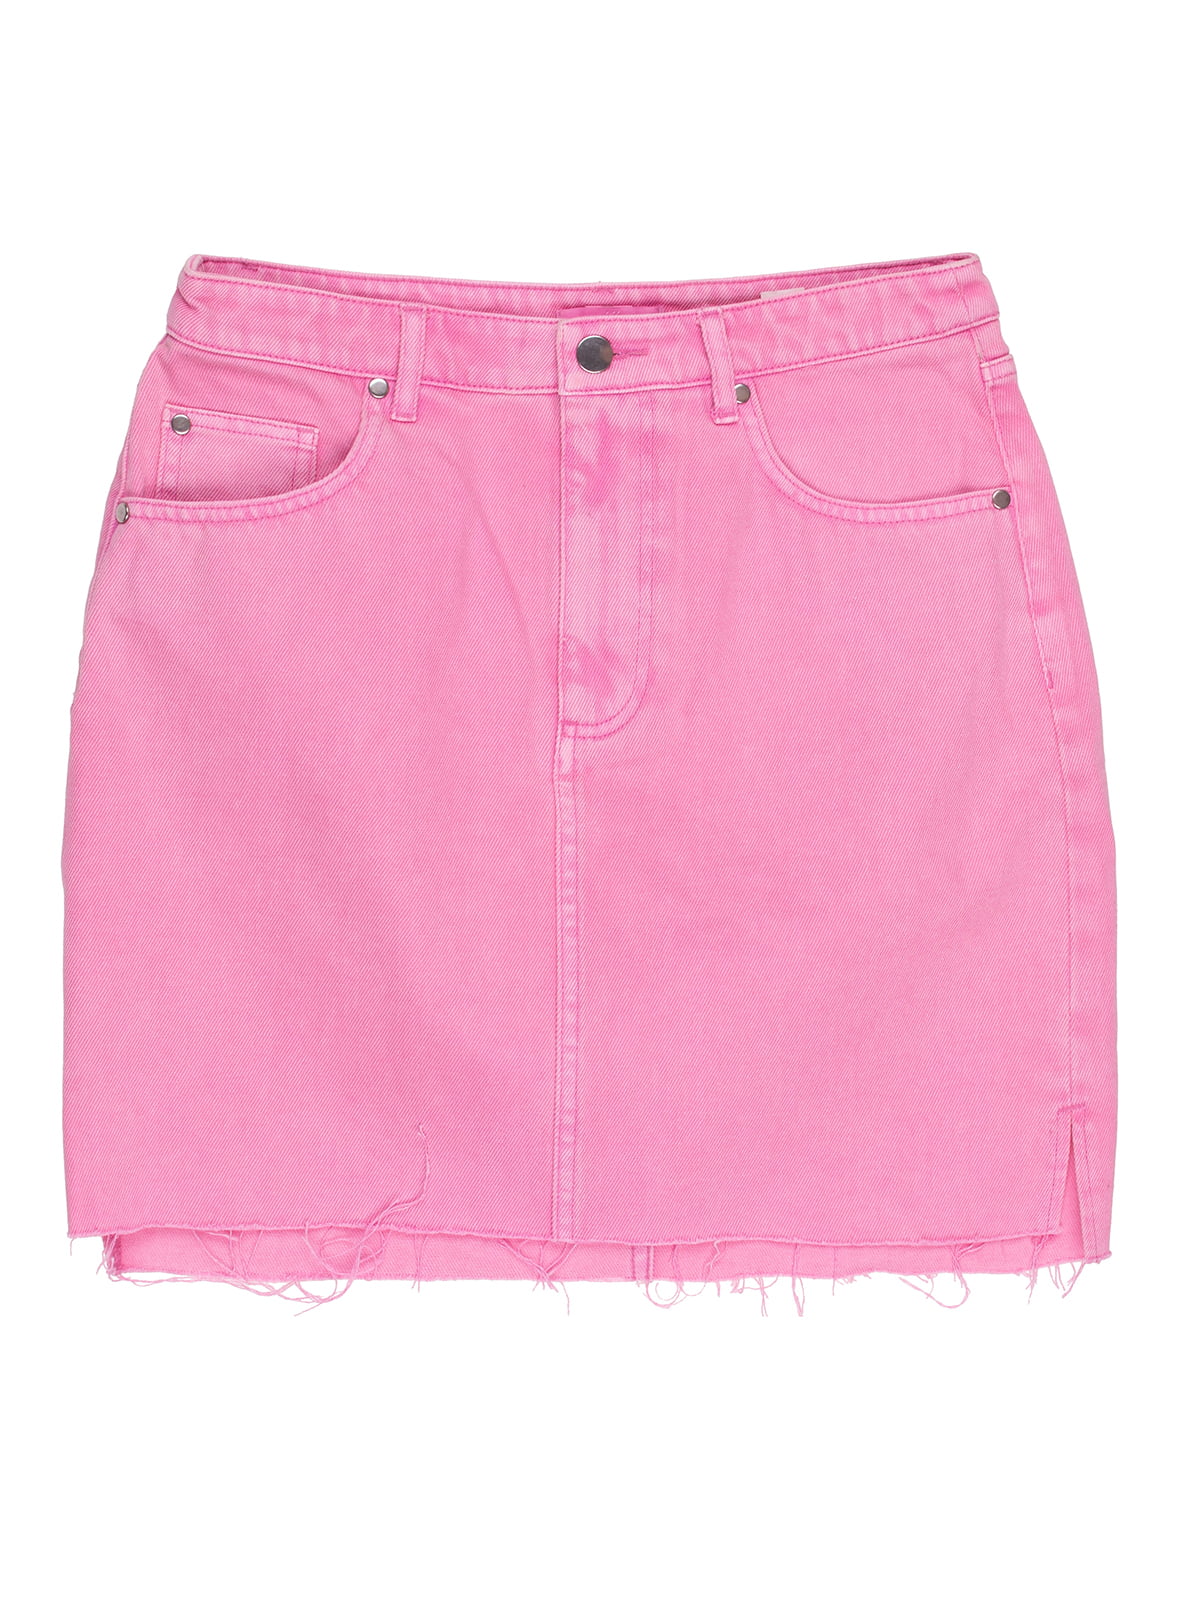 Юбка розовая джинсовая | 5324186